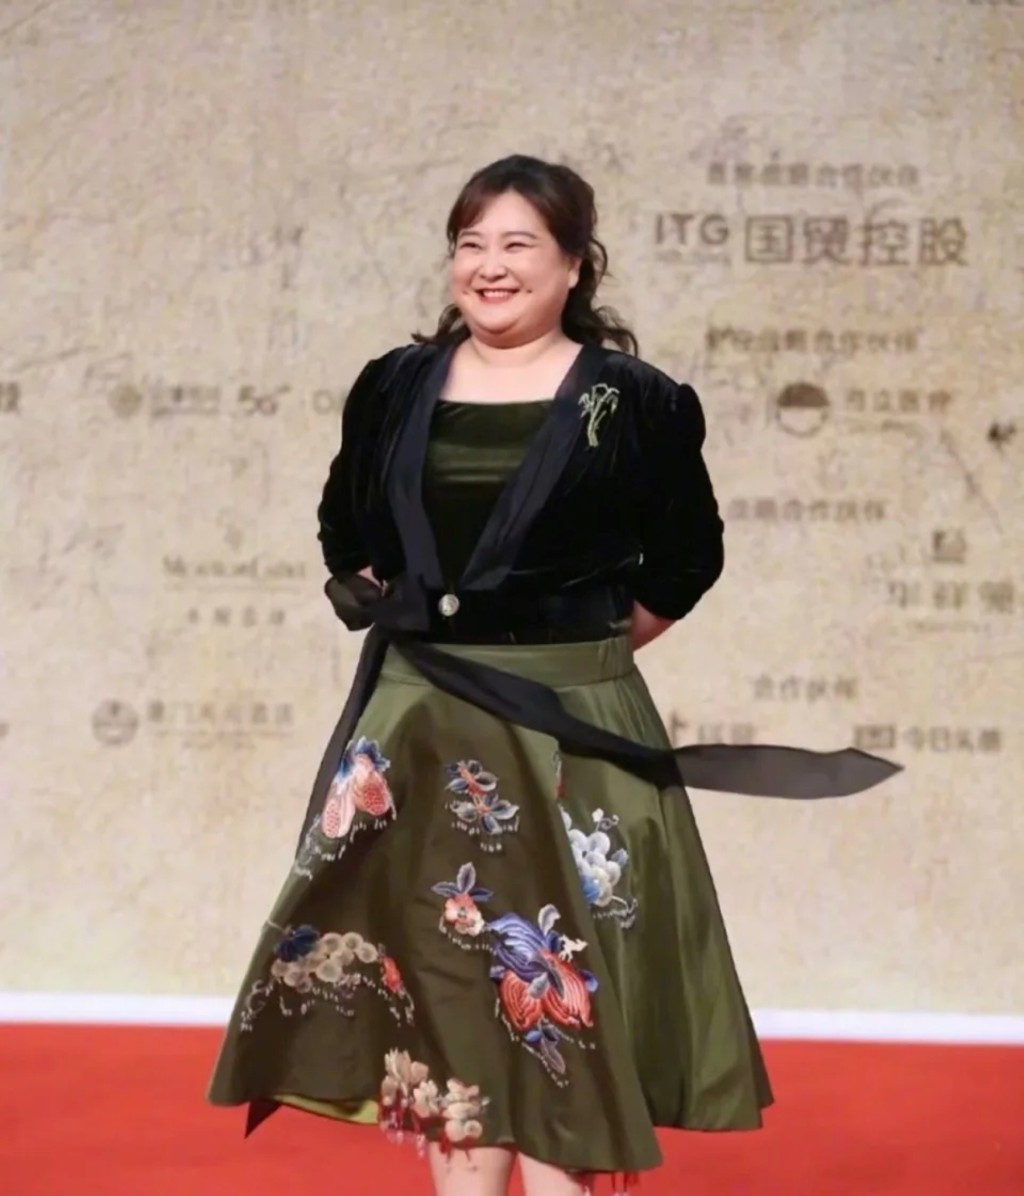 2021年賈玲出席第34屆中國電影金雞獎的照片。 中新社